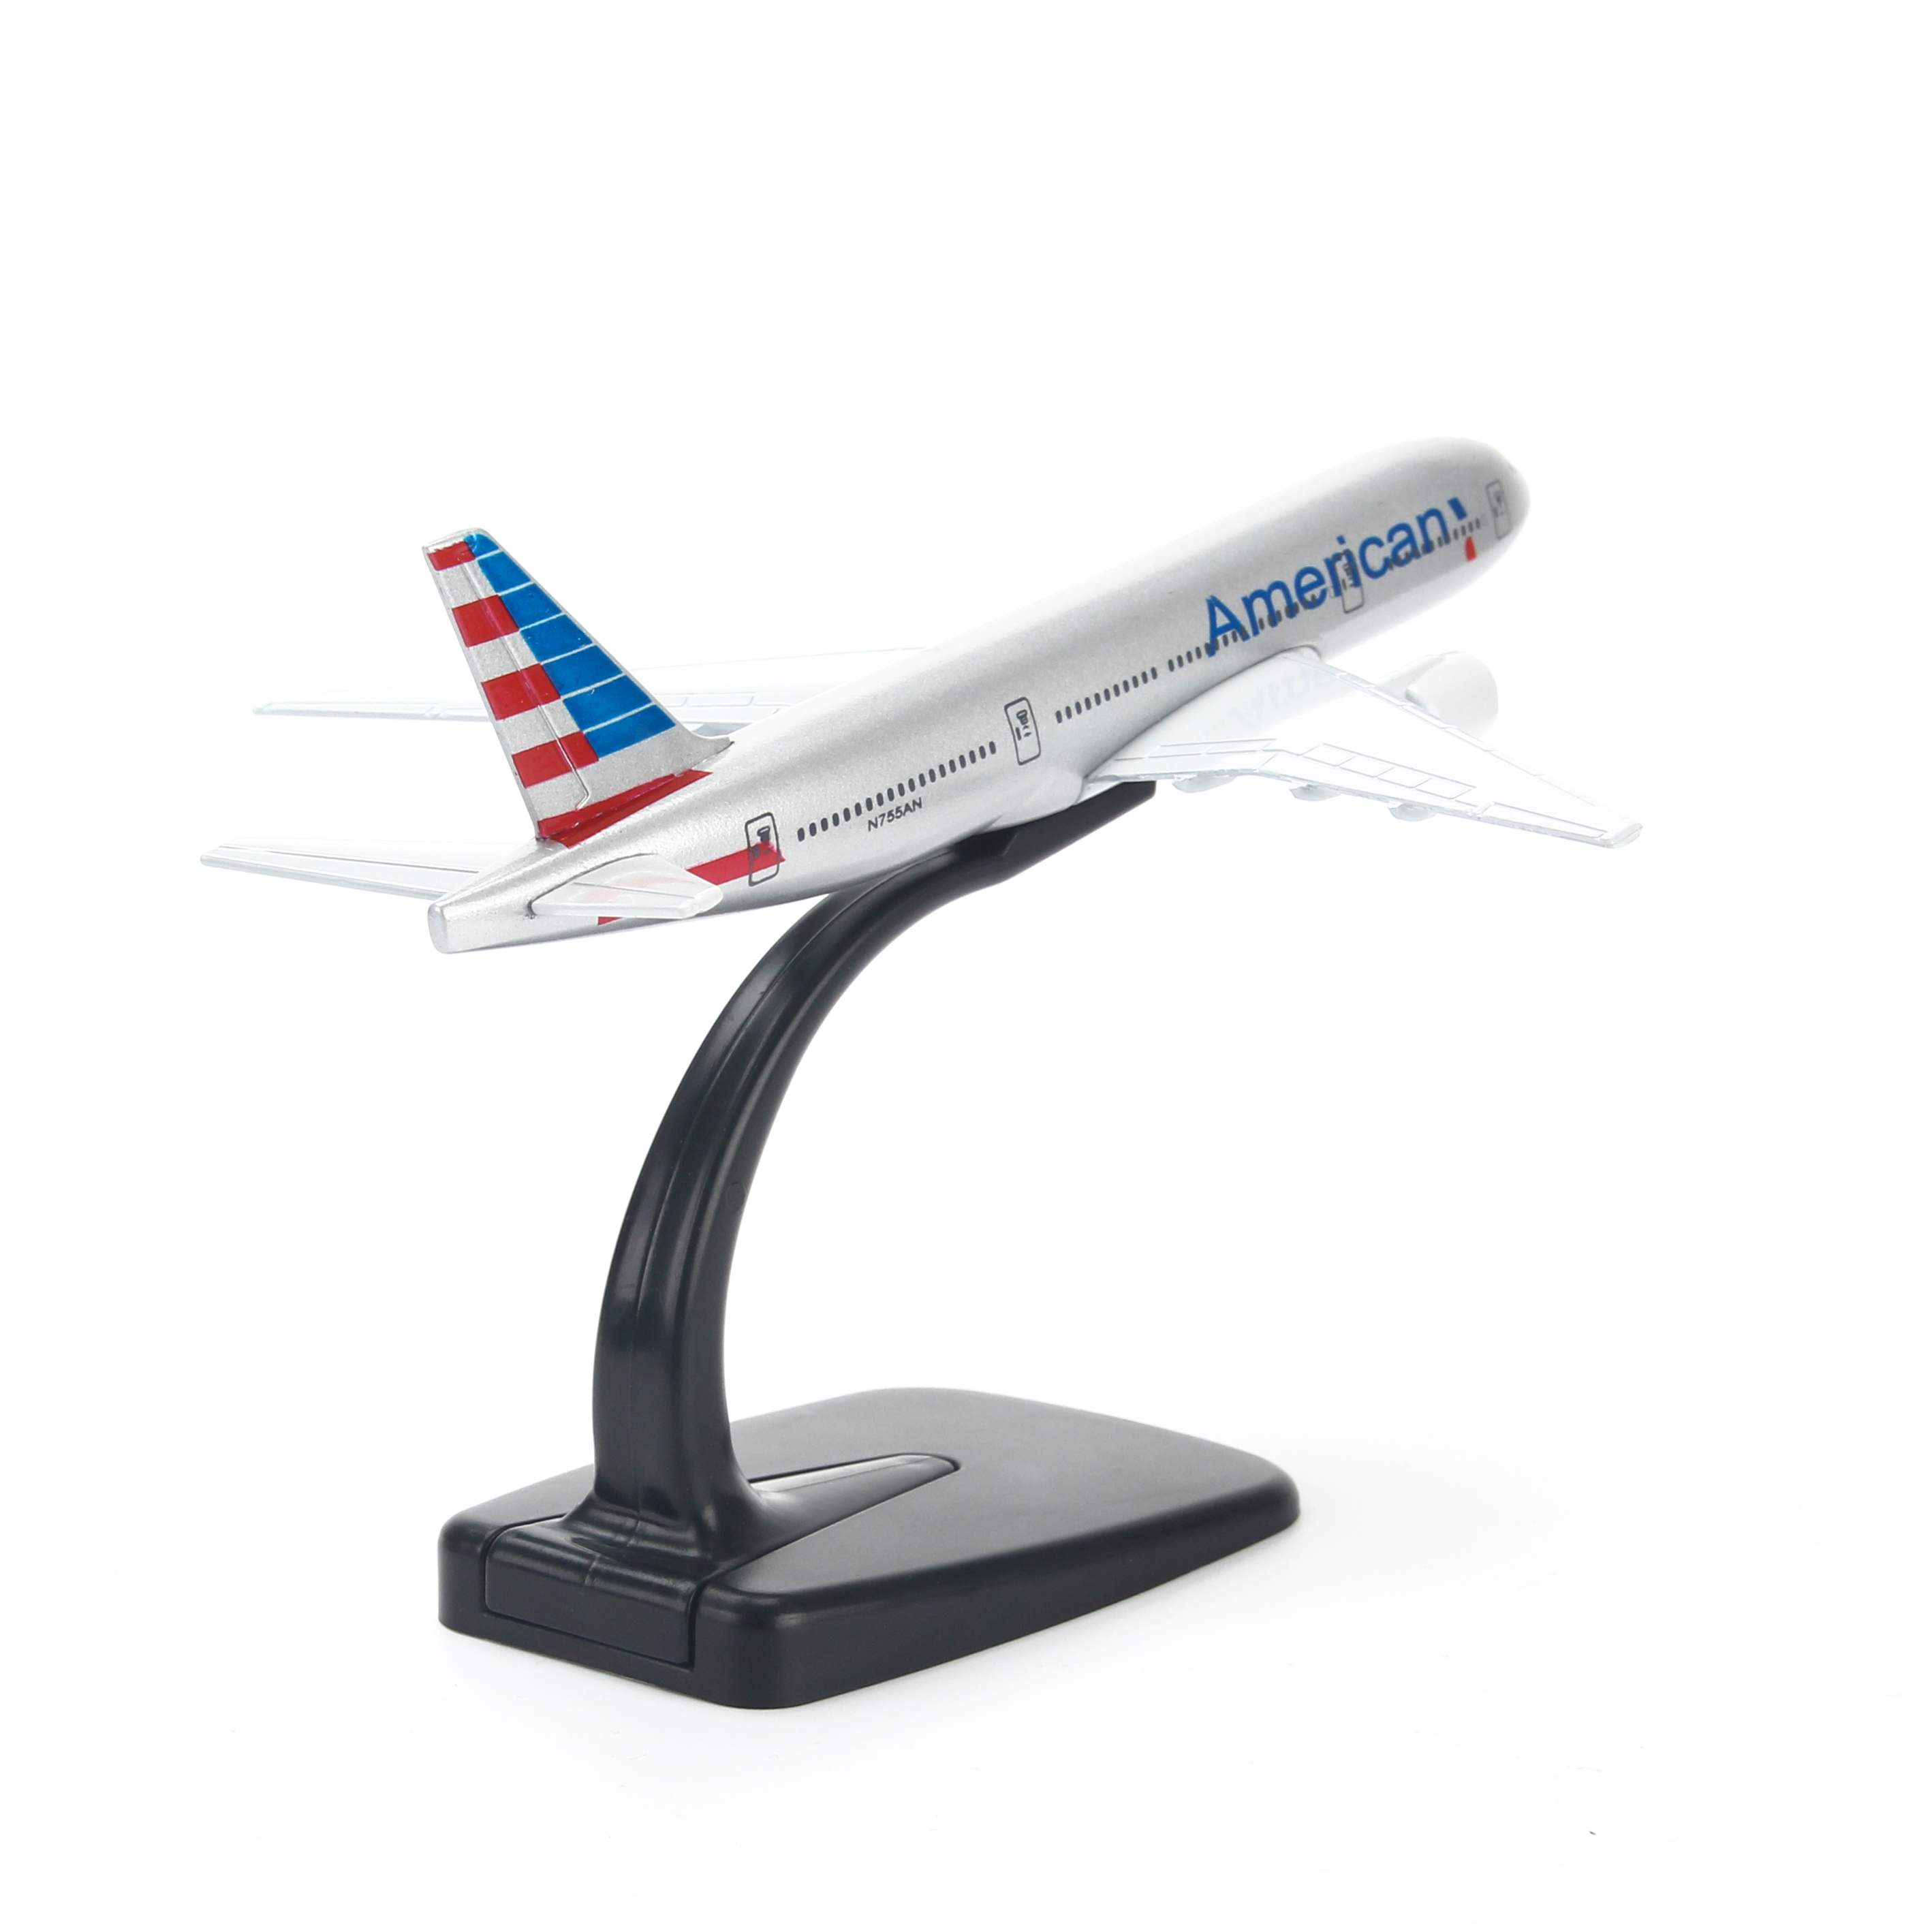 Mô hình máy bay American Airlines (16cm) - Bạc, Xanh dương đậm, Đỏ